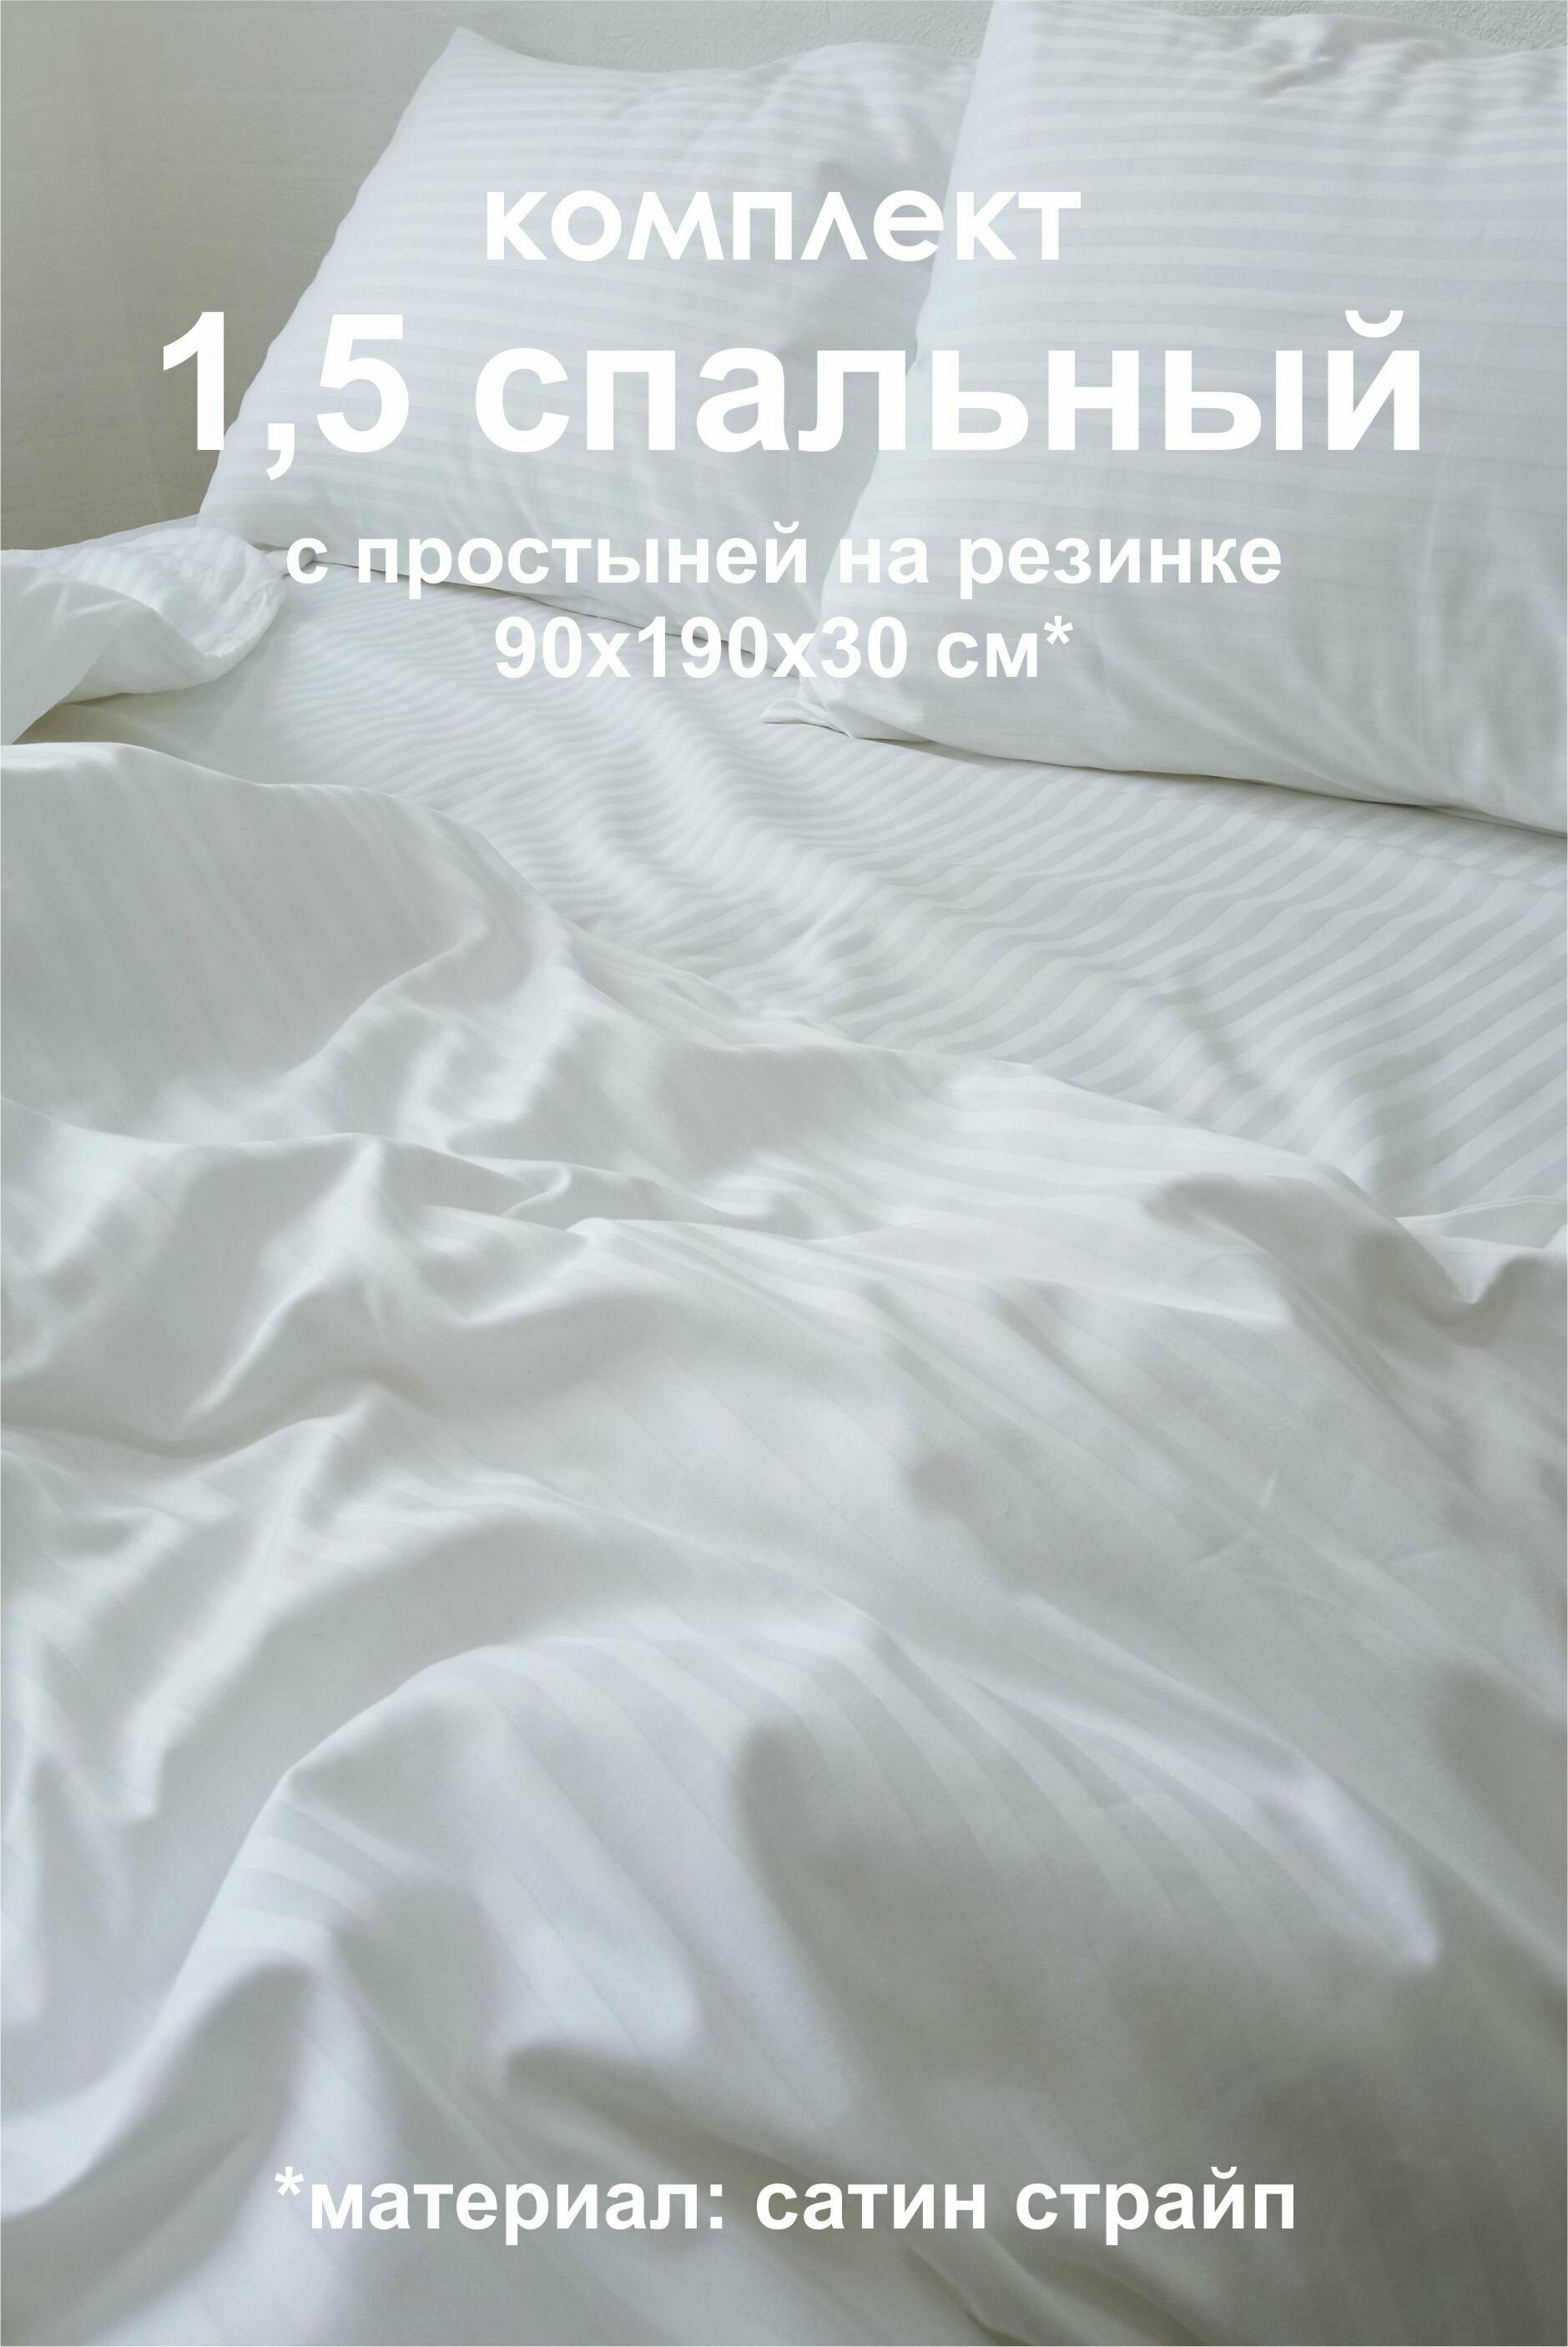 Постельное белье из сатина страйп, в 1,5 спальном размере с простыней на резинке 90х190х30 см - фотография № 1